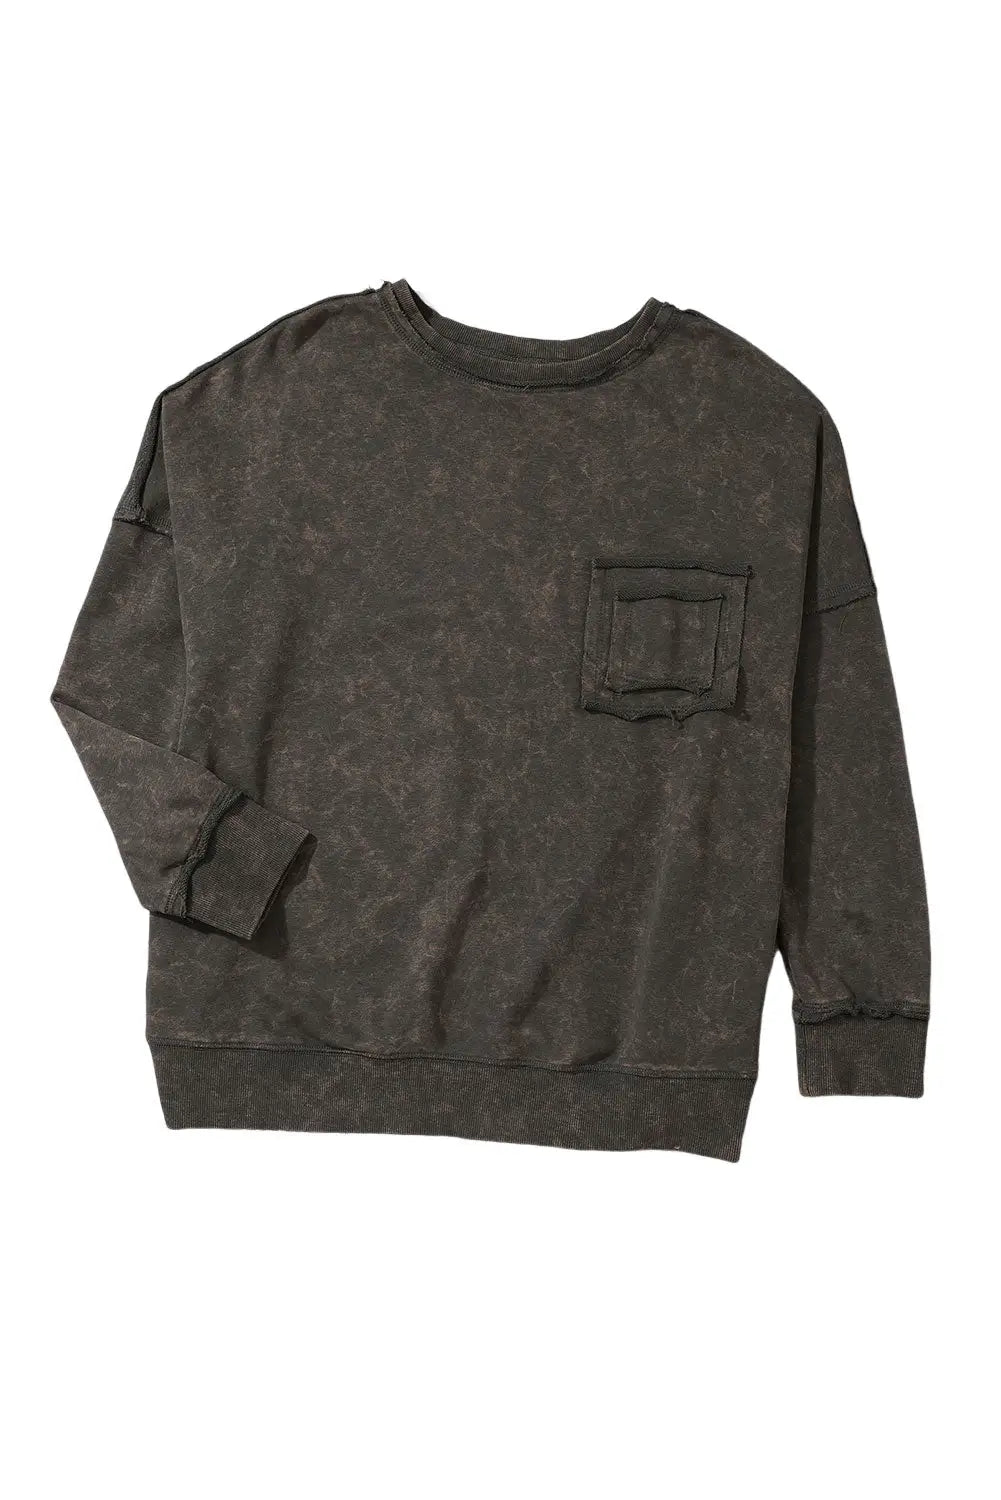 Gray acid wash drop shoulder long sleeve sweatshirt with pockets - sweatshirts & hoodies